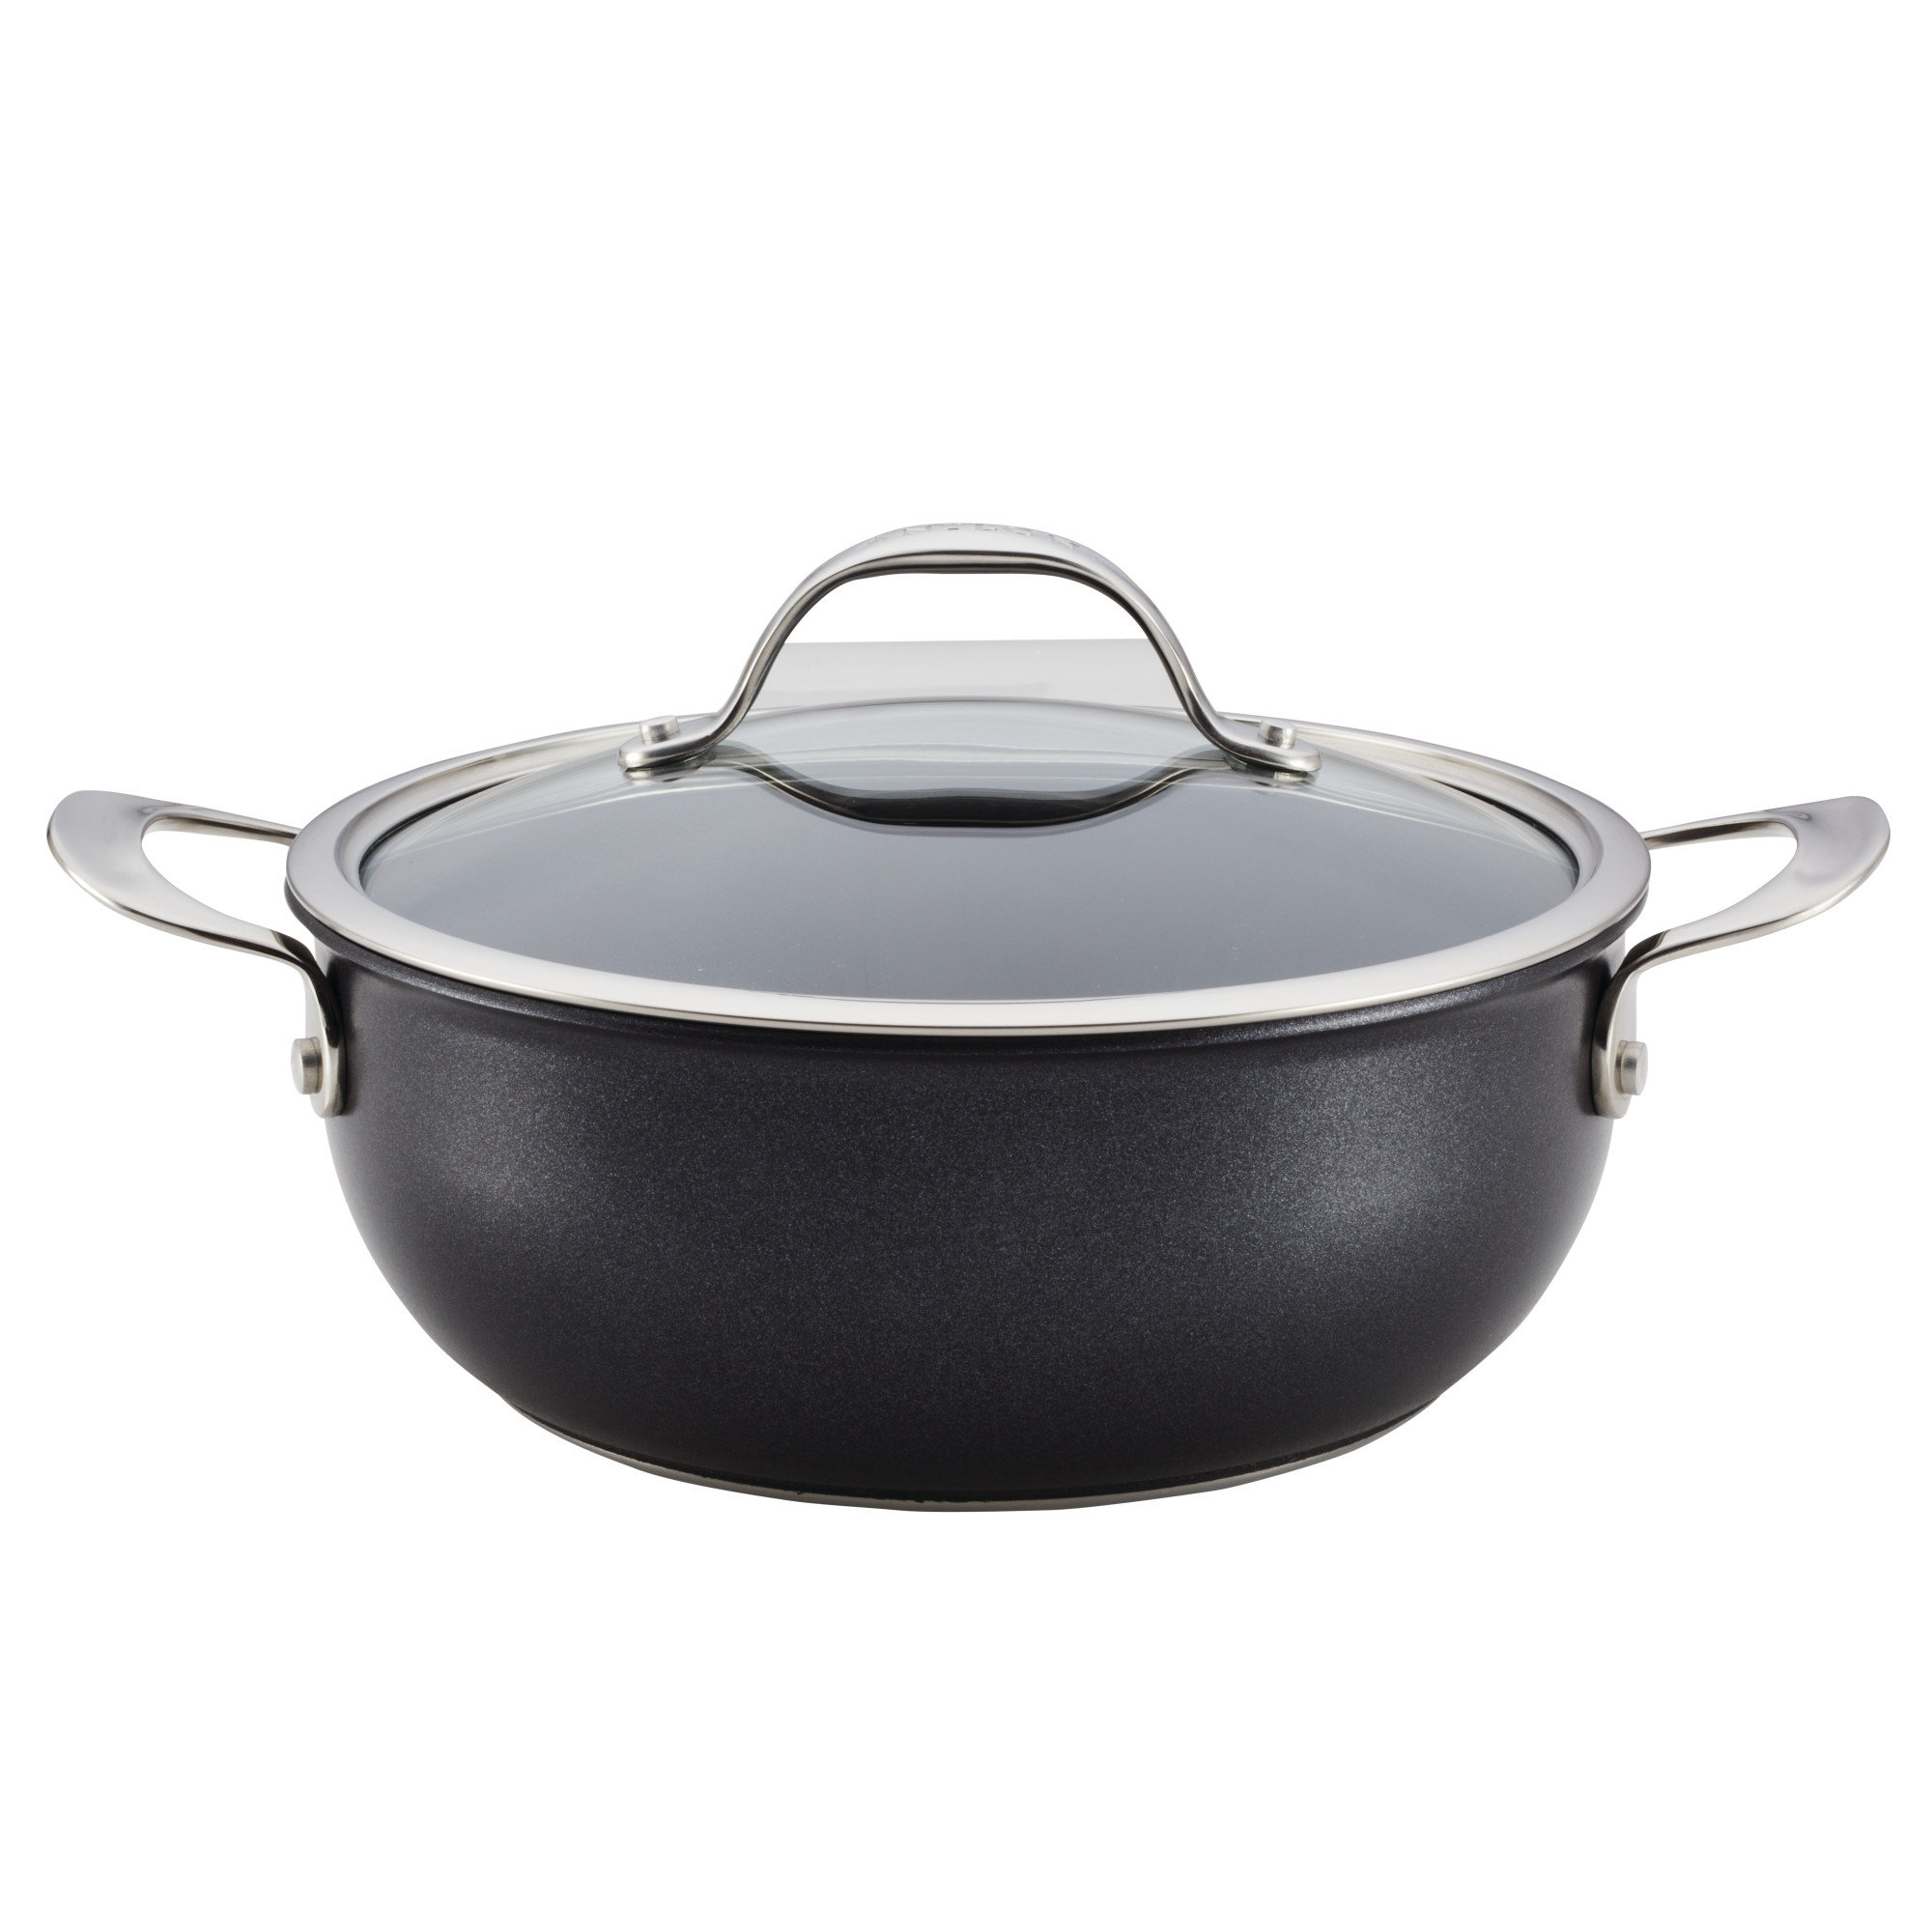 https://assets.wfcdn.com/im/78965136/compr-r85/2026/202624367/anolon-x-hybrid-cookware-nonstick-aluminum-nonstick-casserole-pan-with-lid-4-quart.jpg